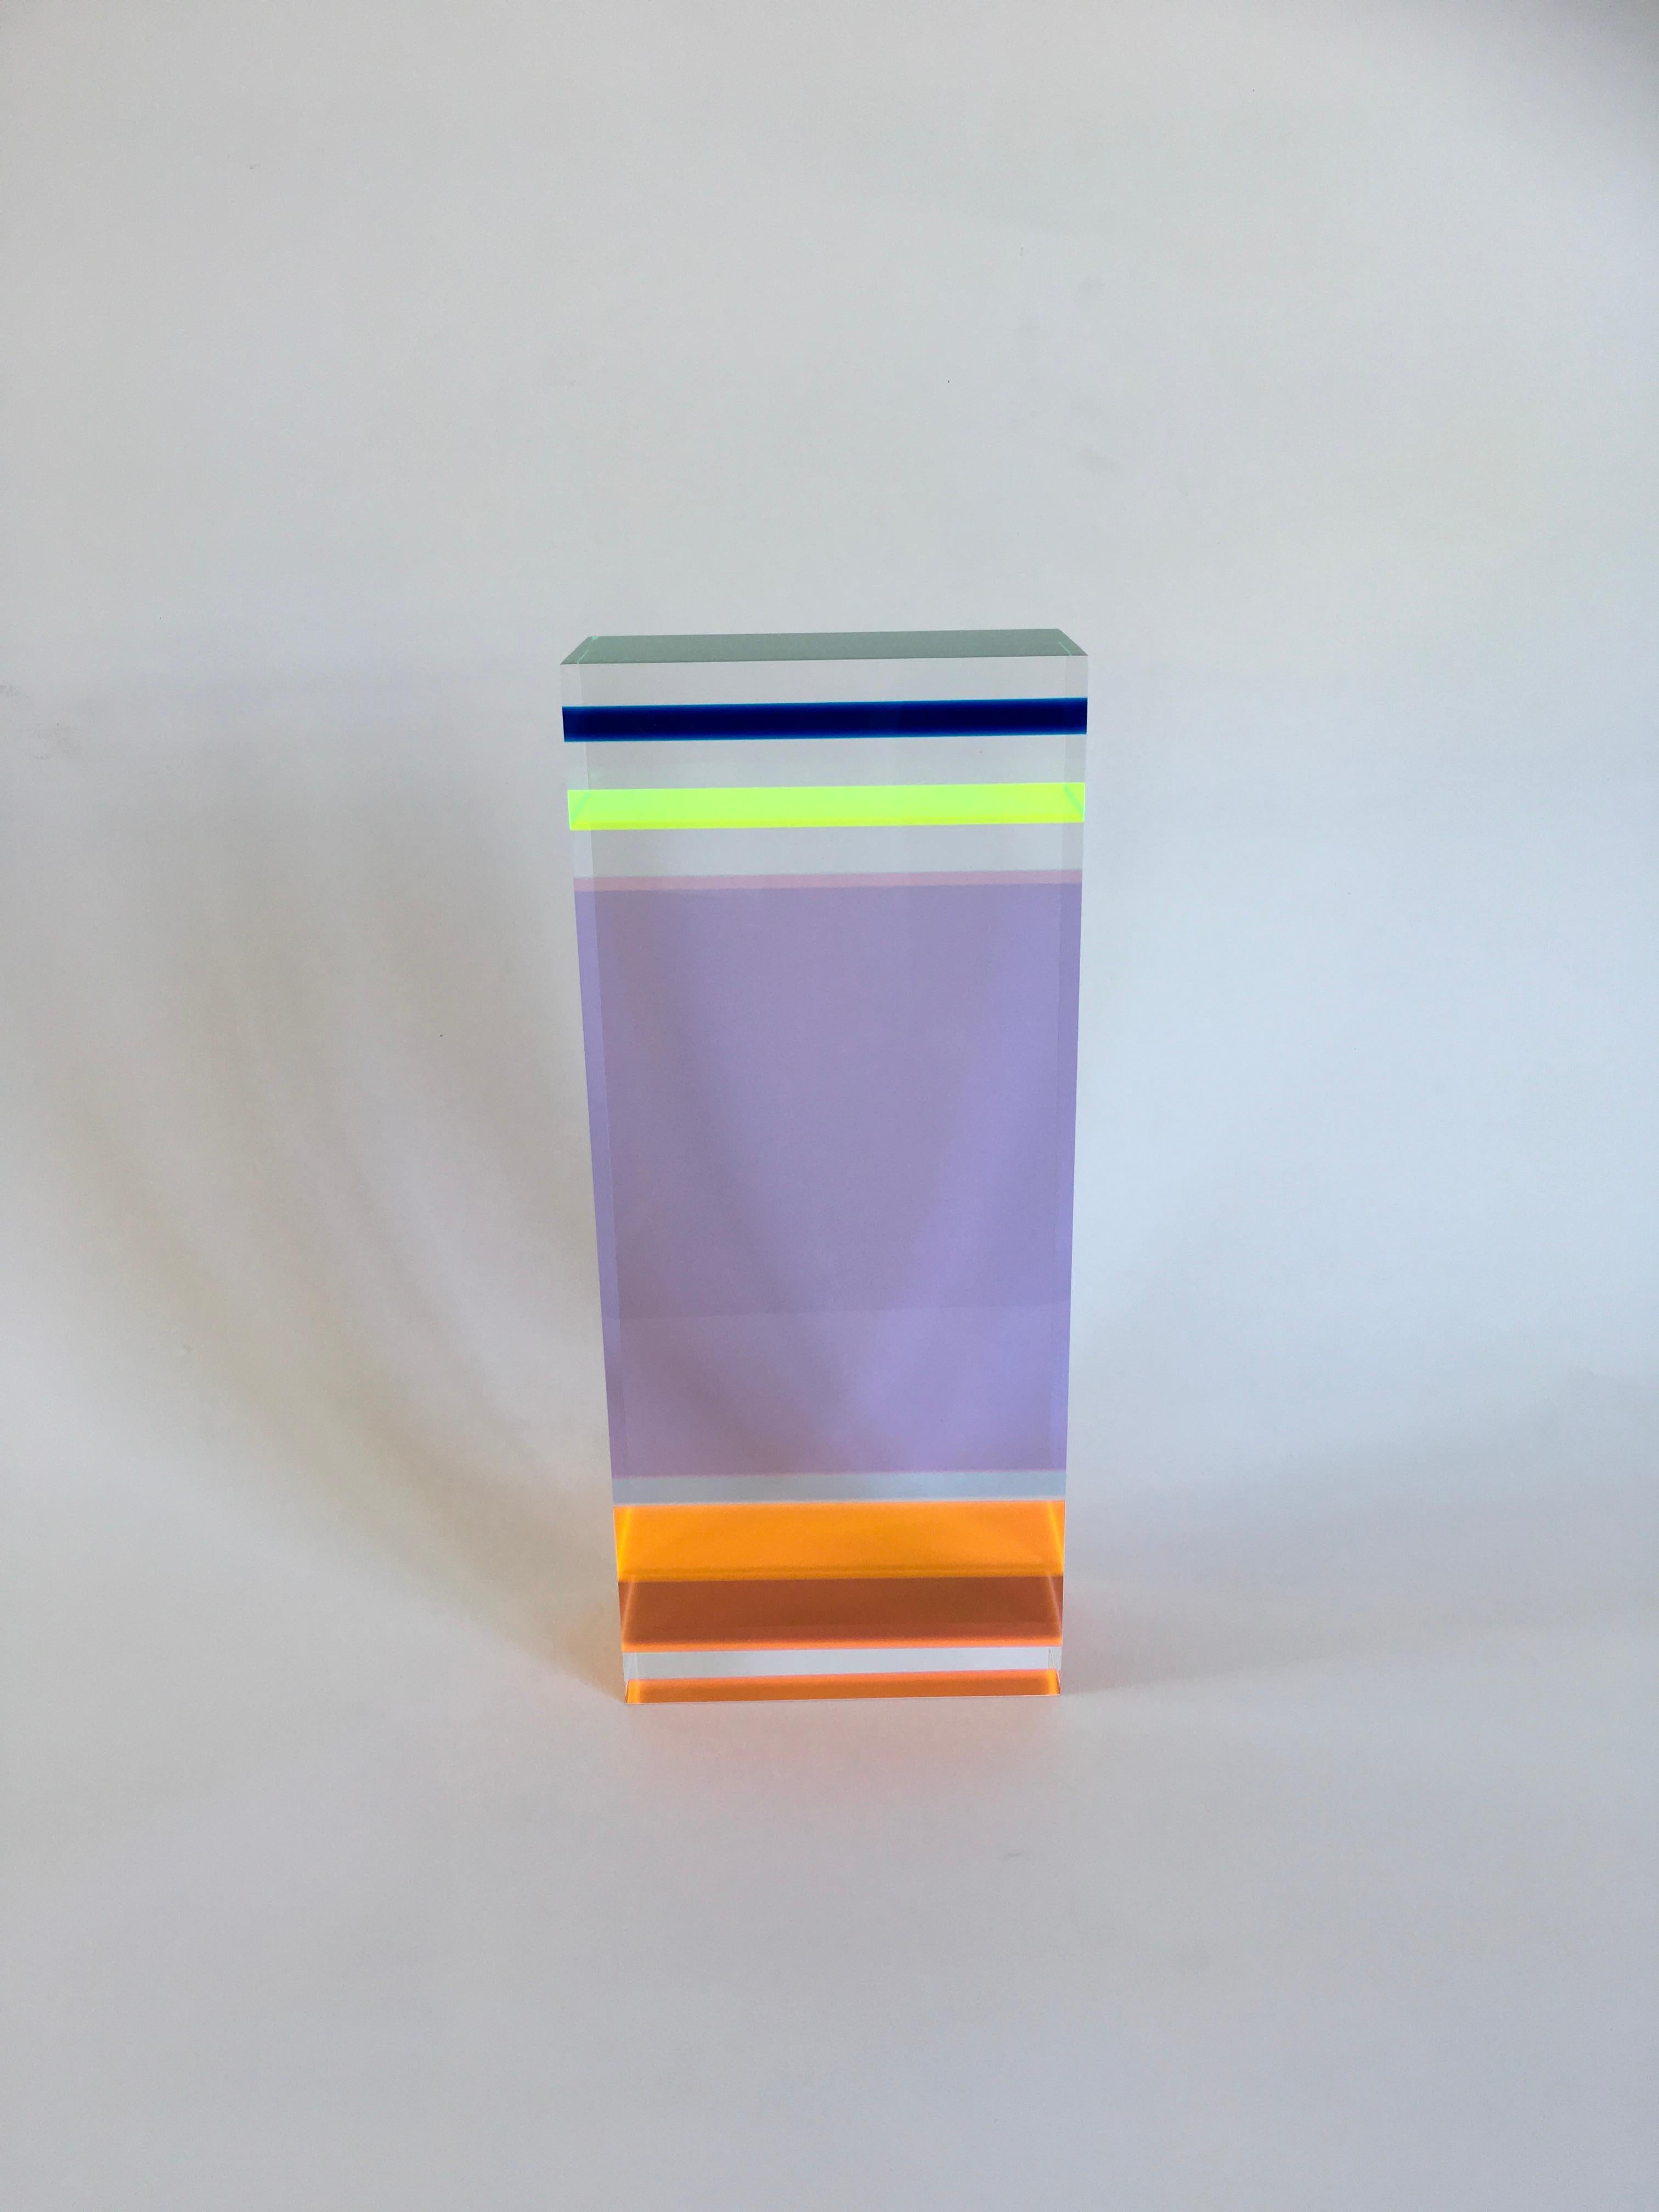 Plexiglass Sculpture DNA Genetic Model by Studio Superego, Italy